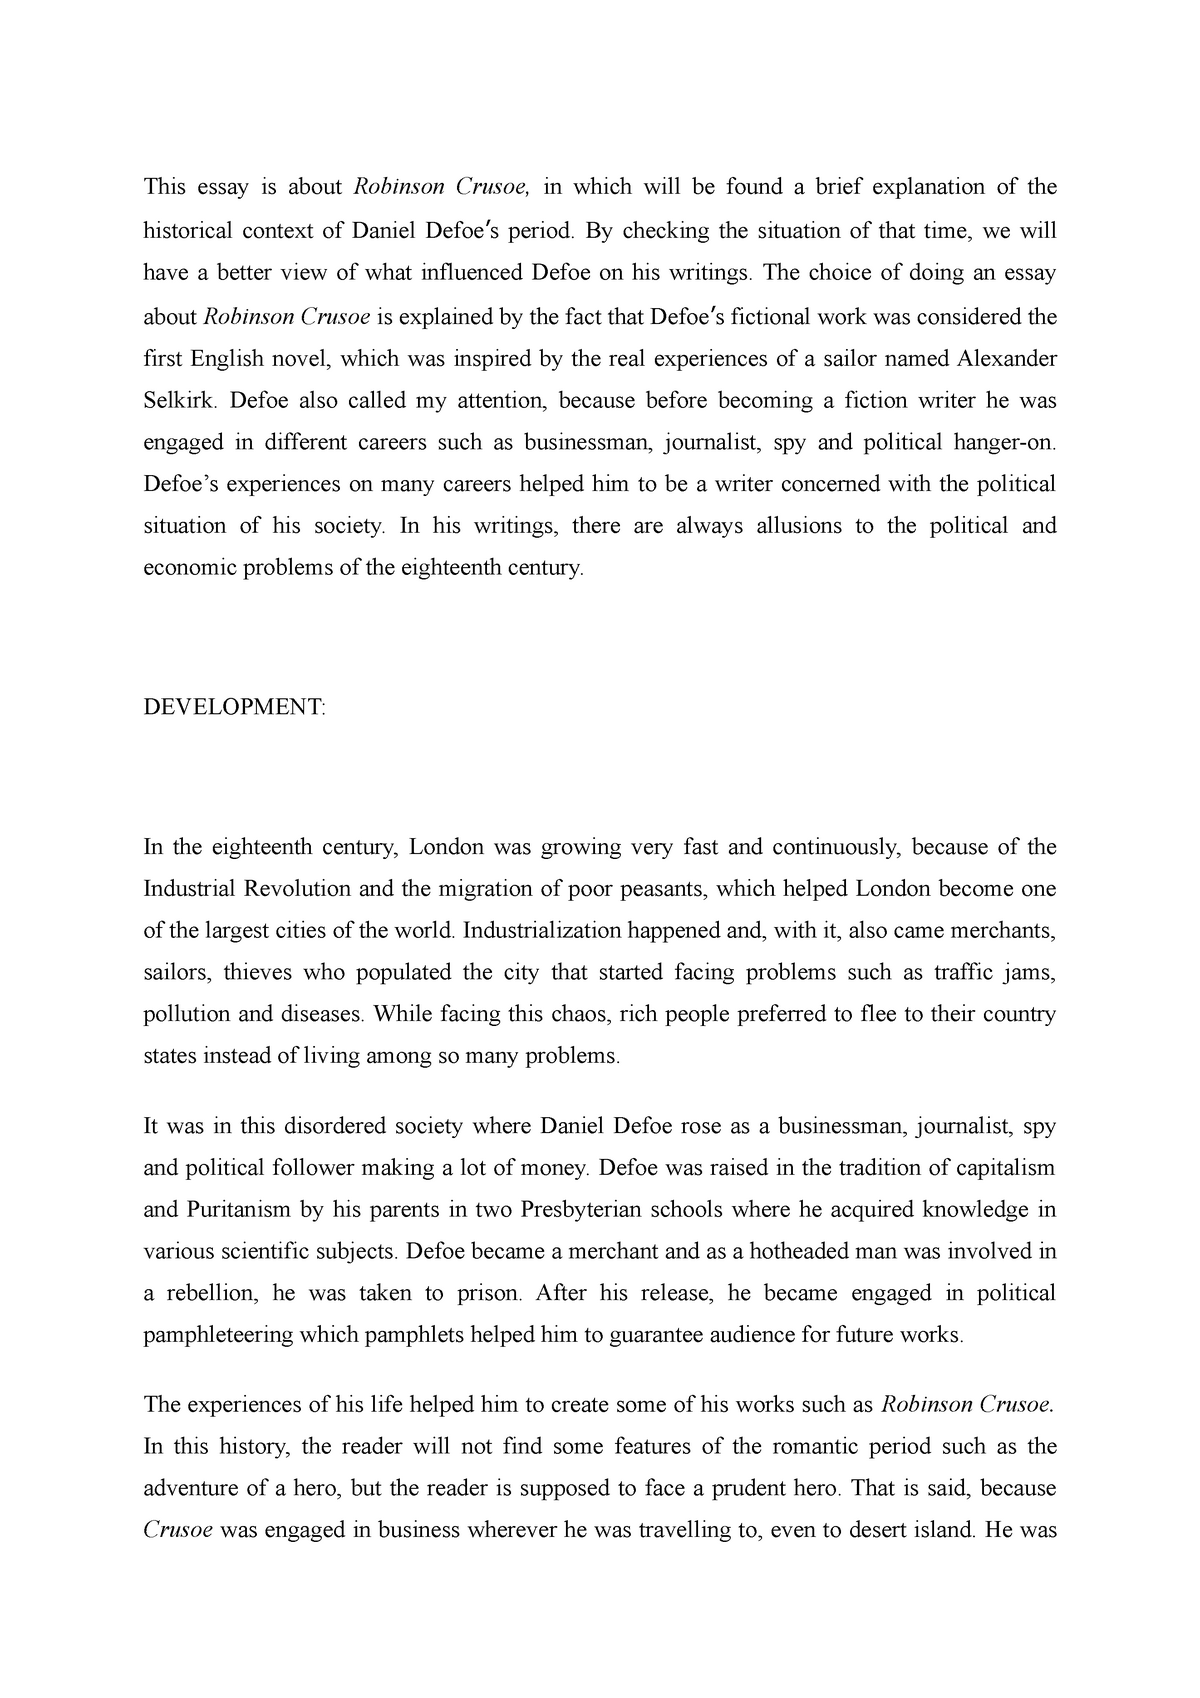 robinson crusoe essay pdf